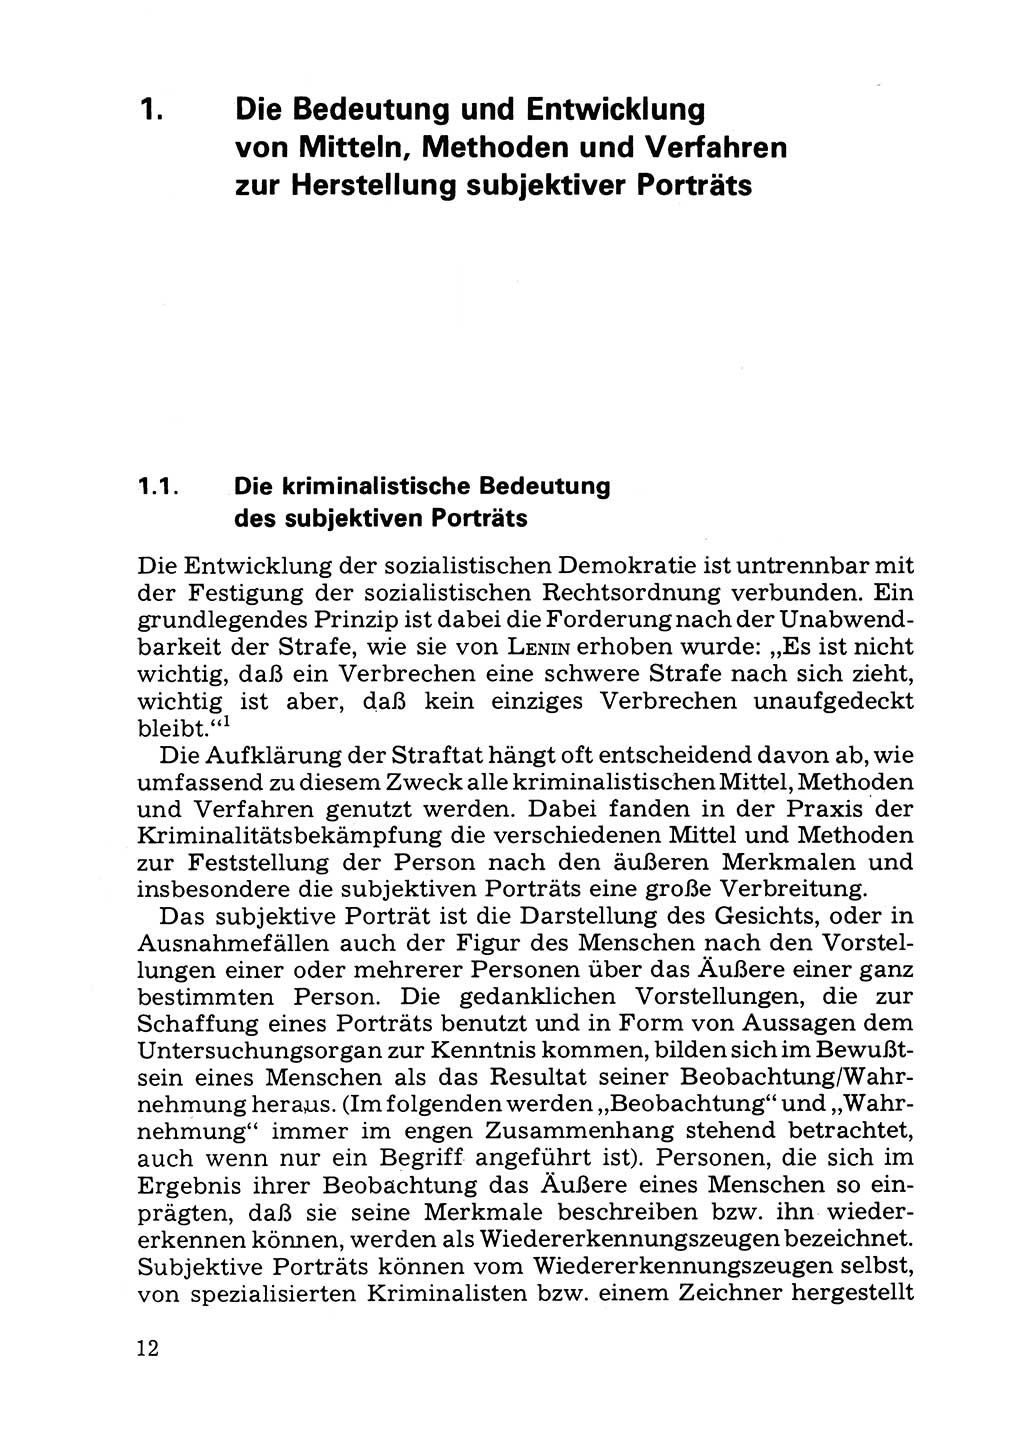 Das subjektive Porträt [Deutsche Demokratische Republik (DDR)] 1981, Seite 12 (Subj. Port. DDR 1981, S. 12)